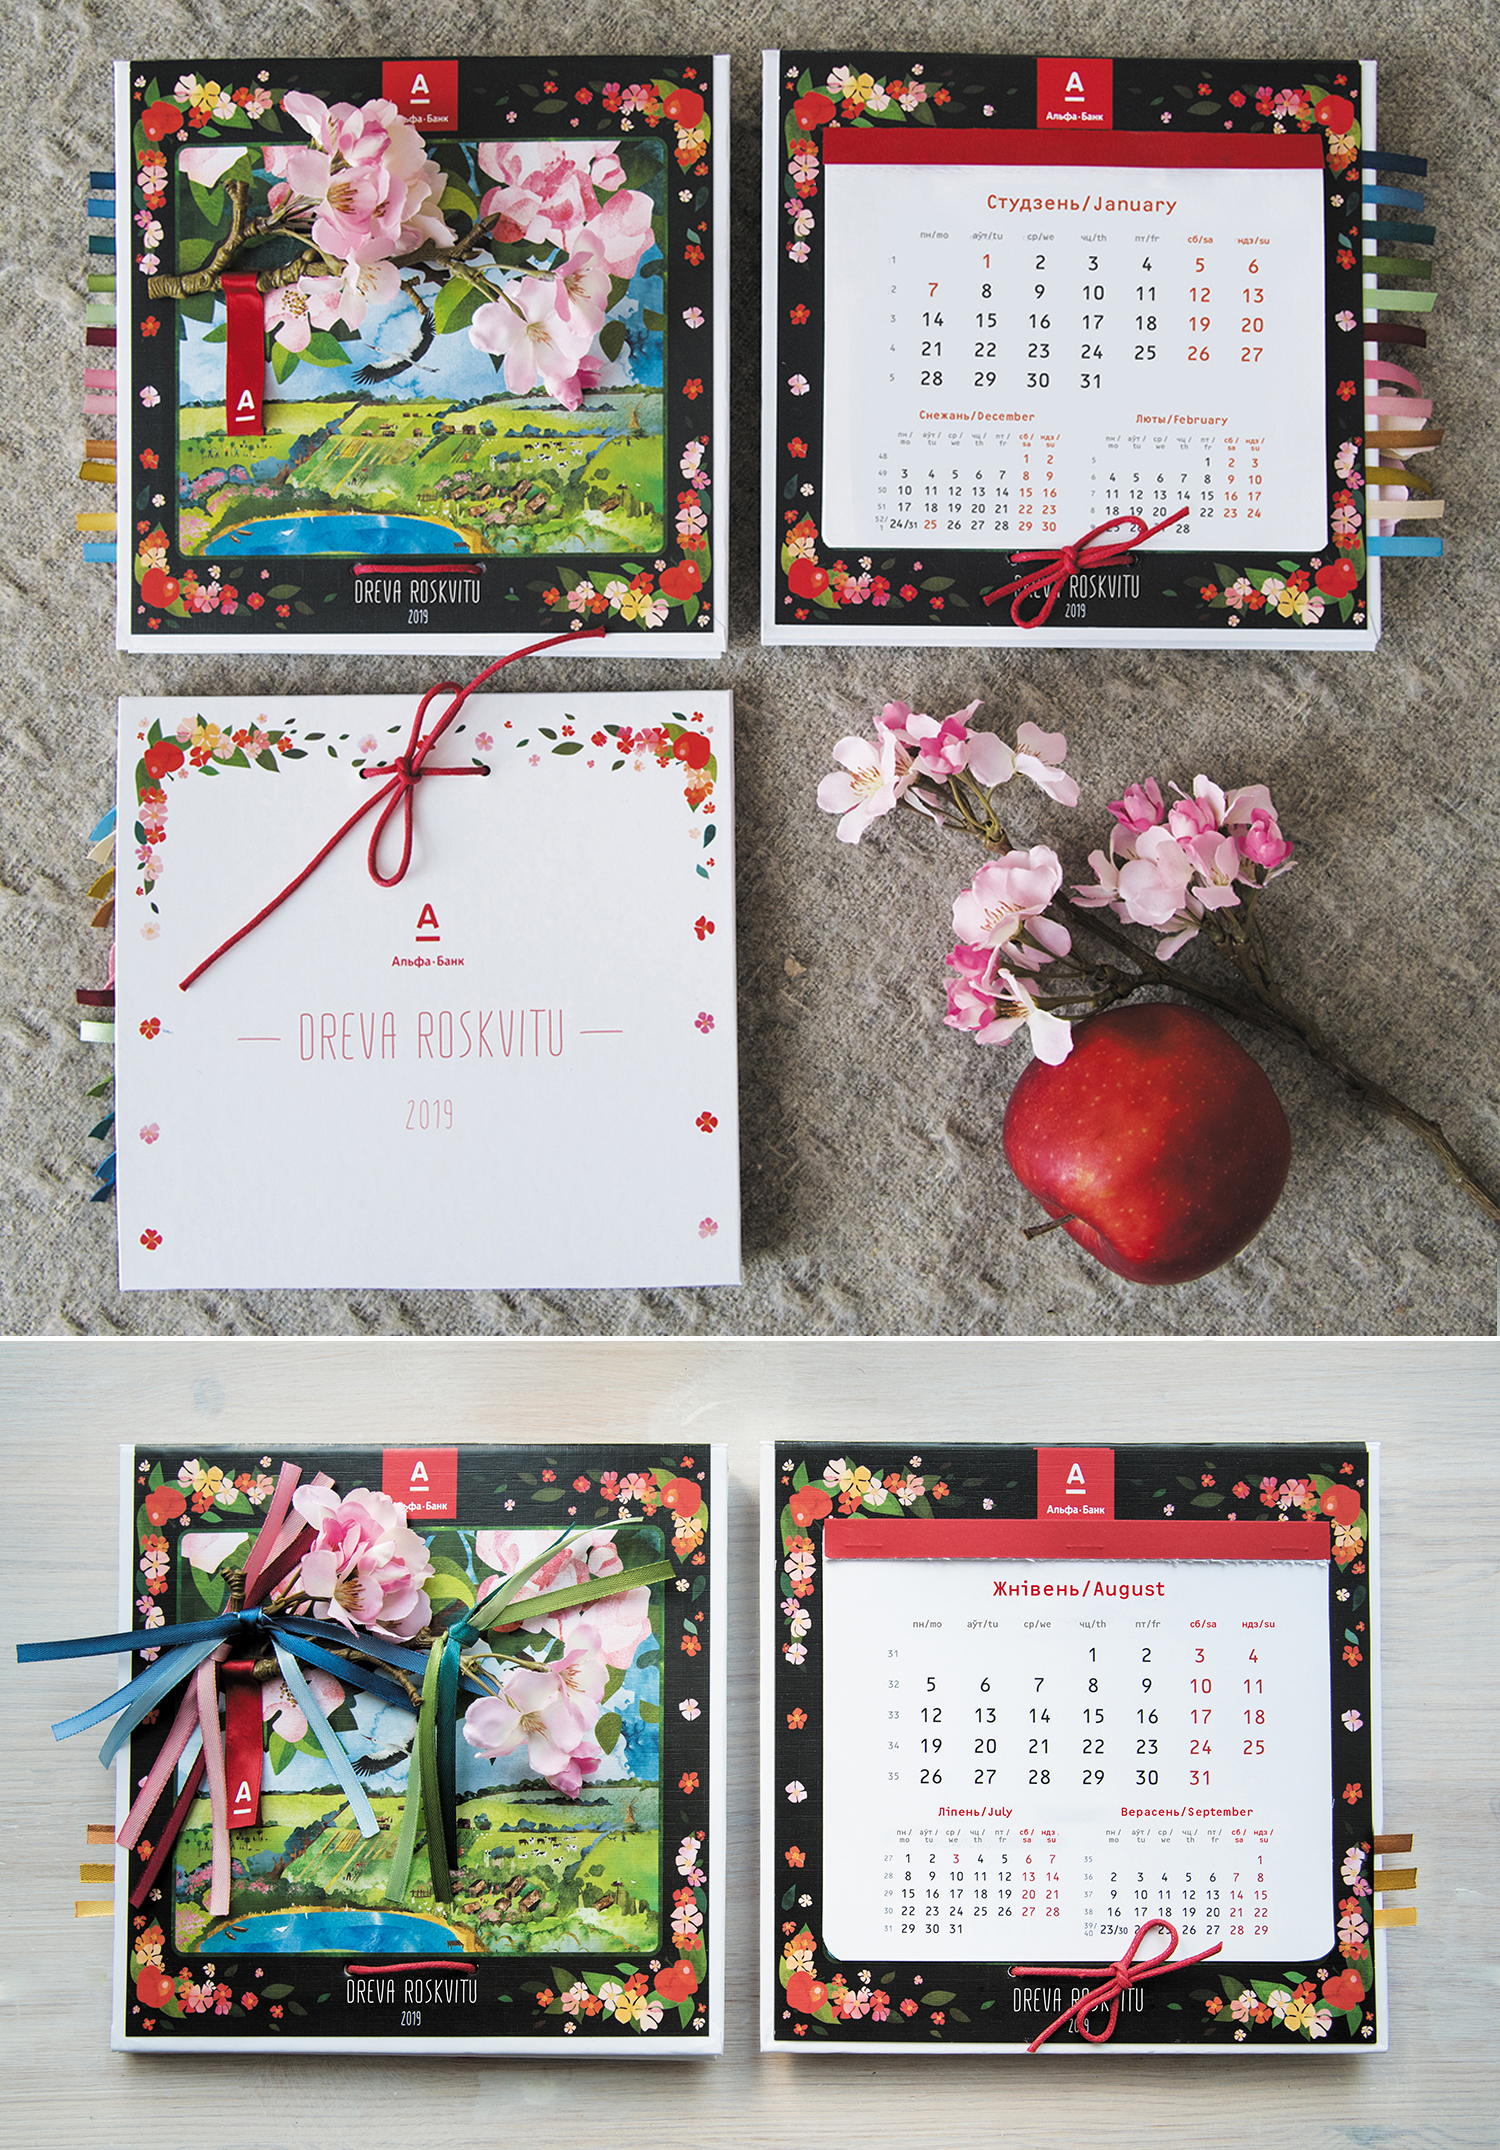 Календарь, Альфа Банк, Smart-calendar.by